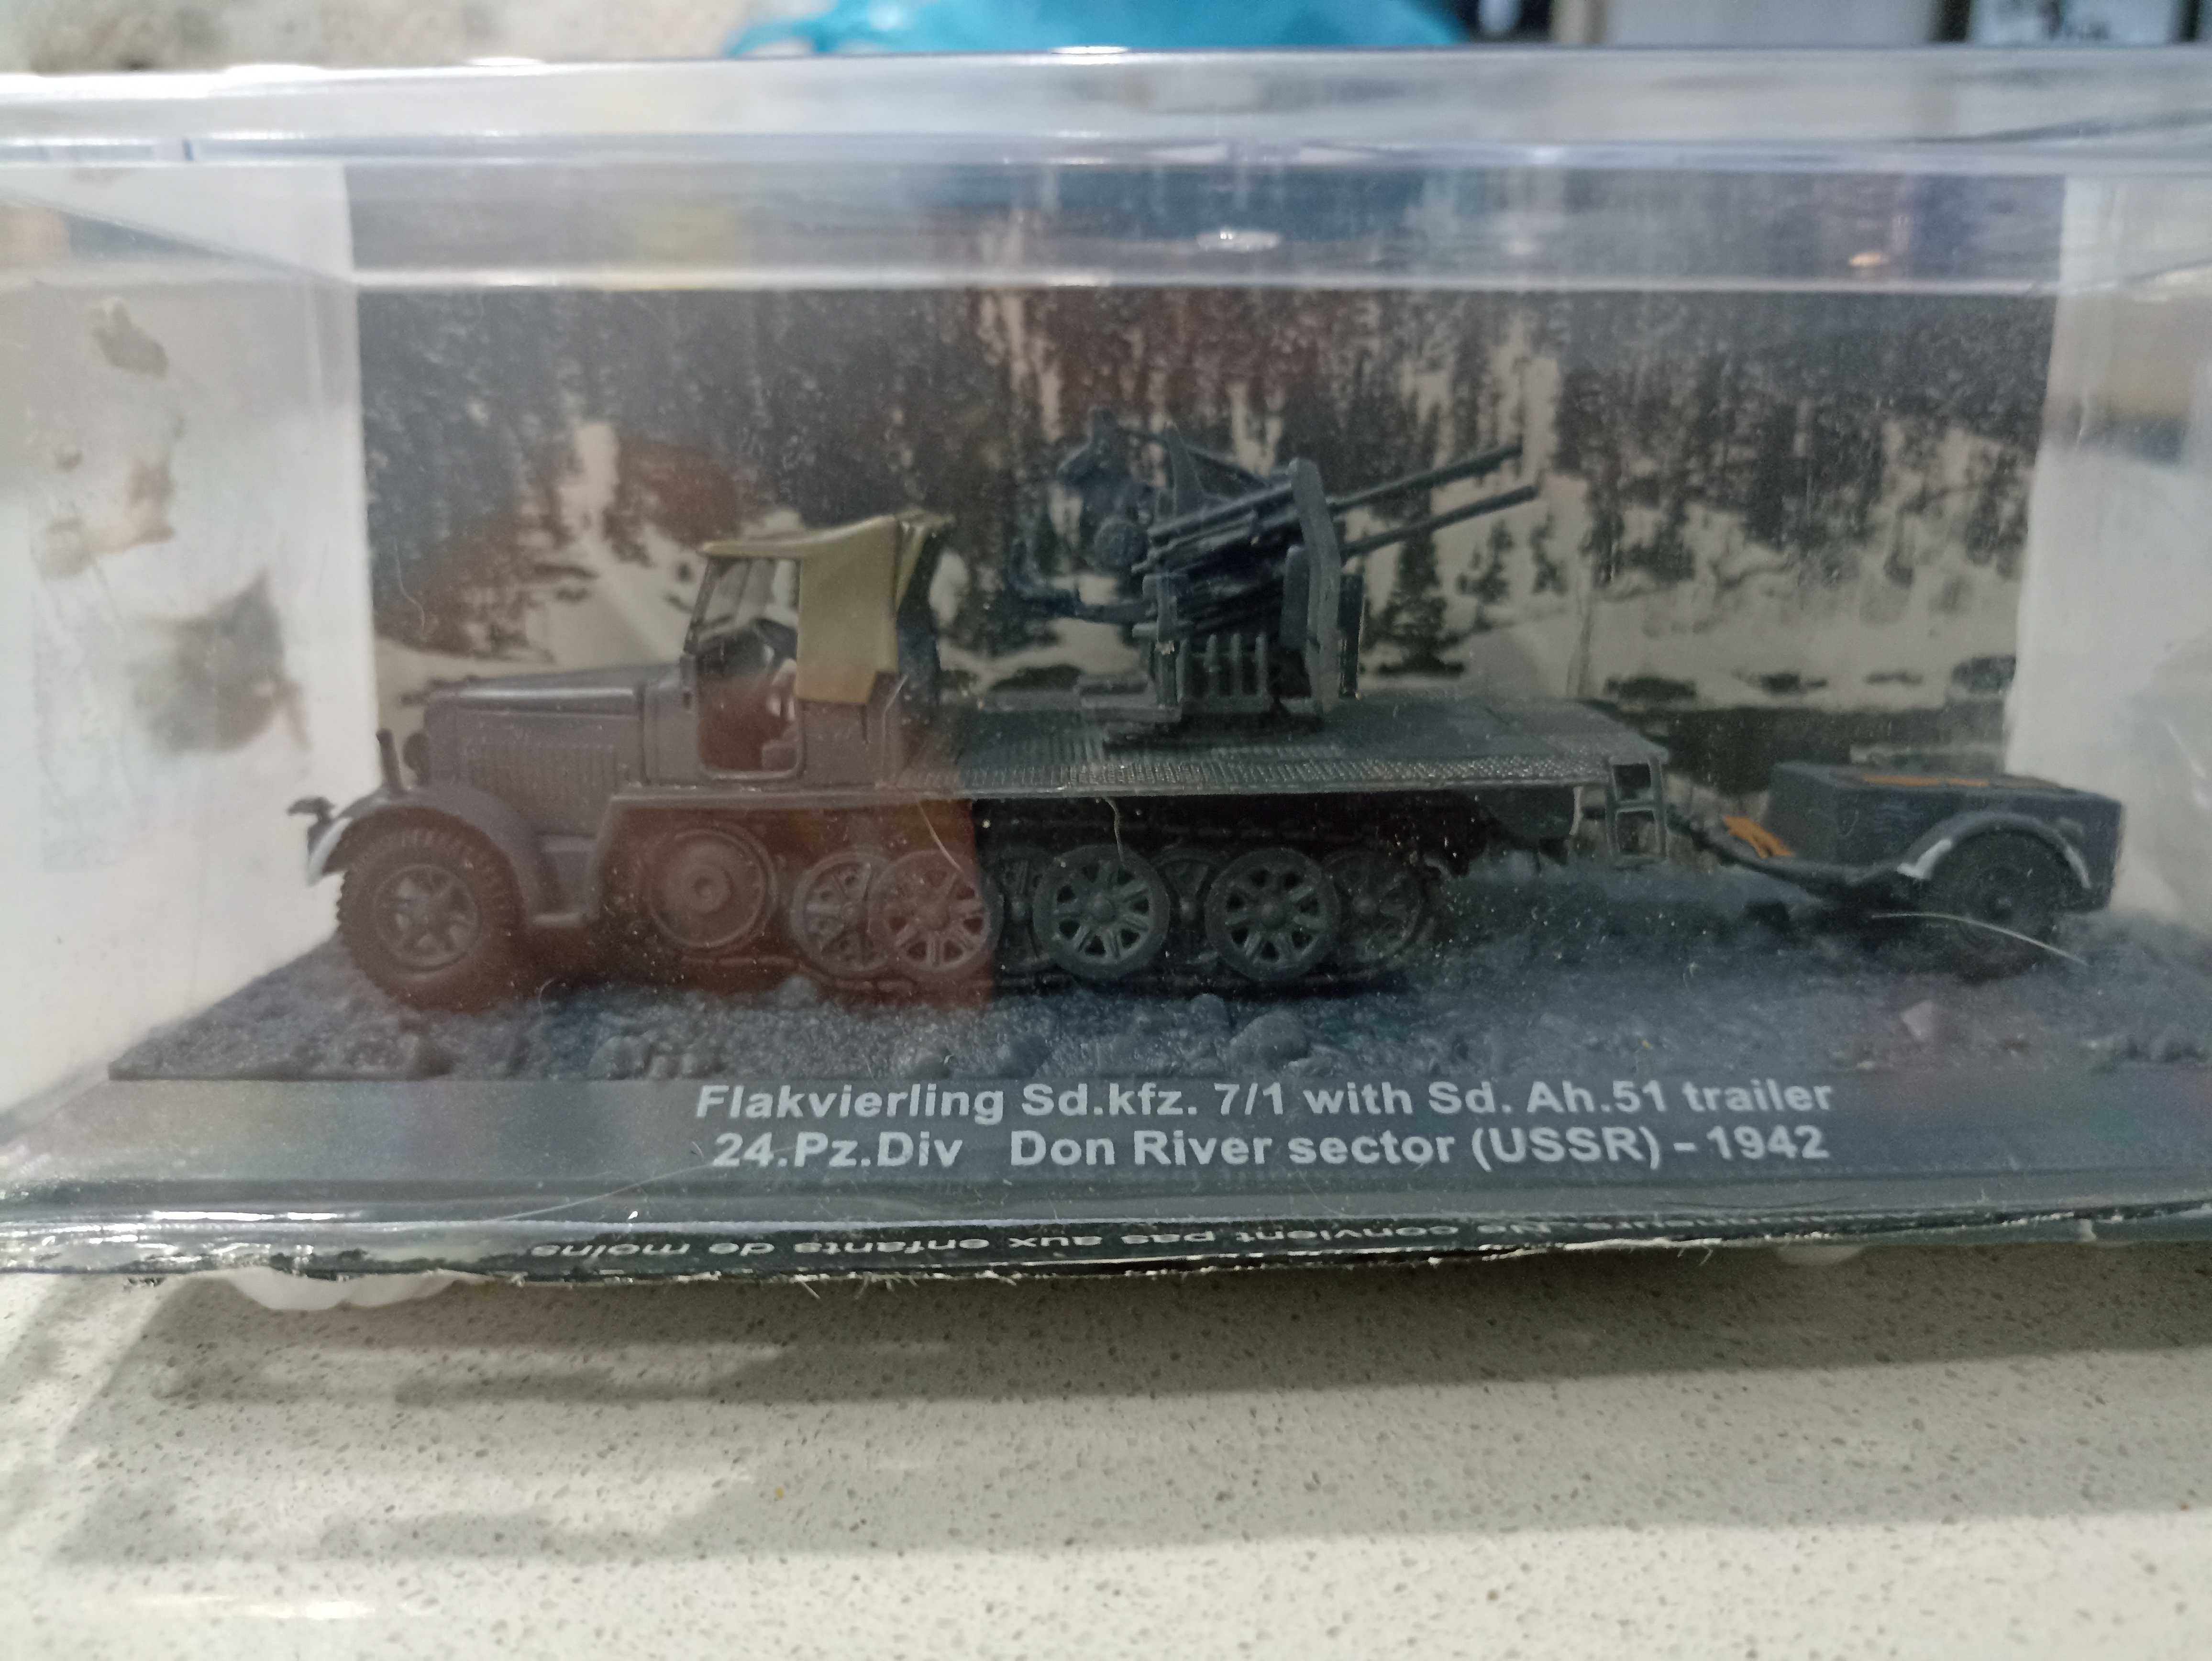 Miniaturas Veículos WW2